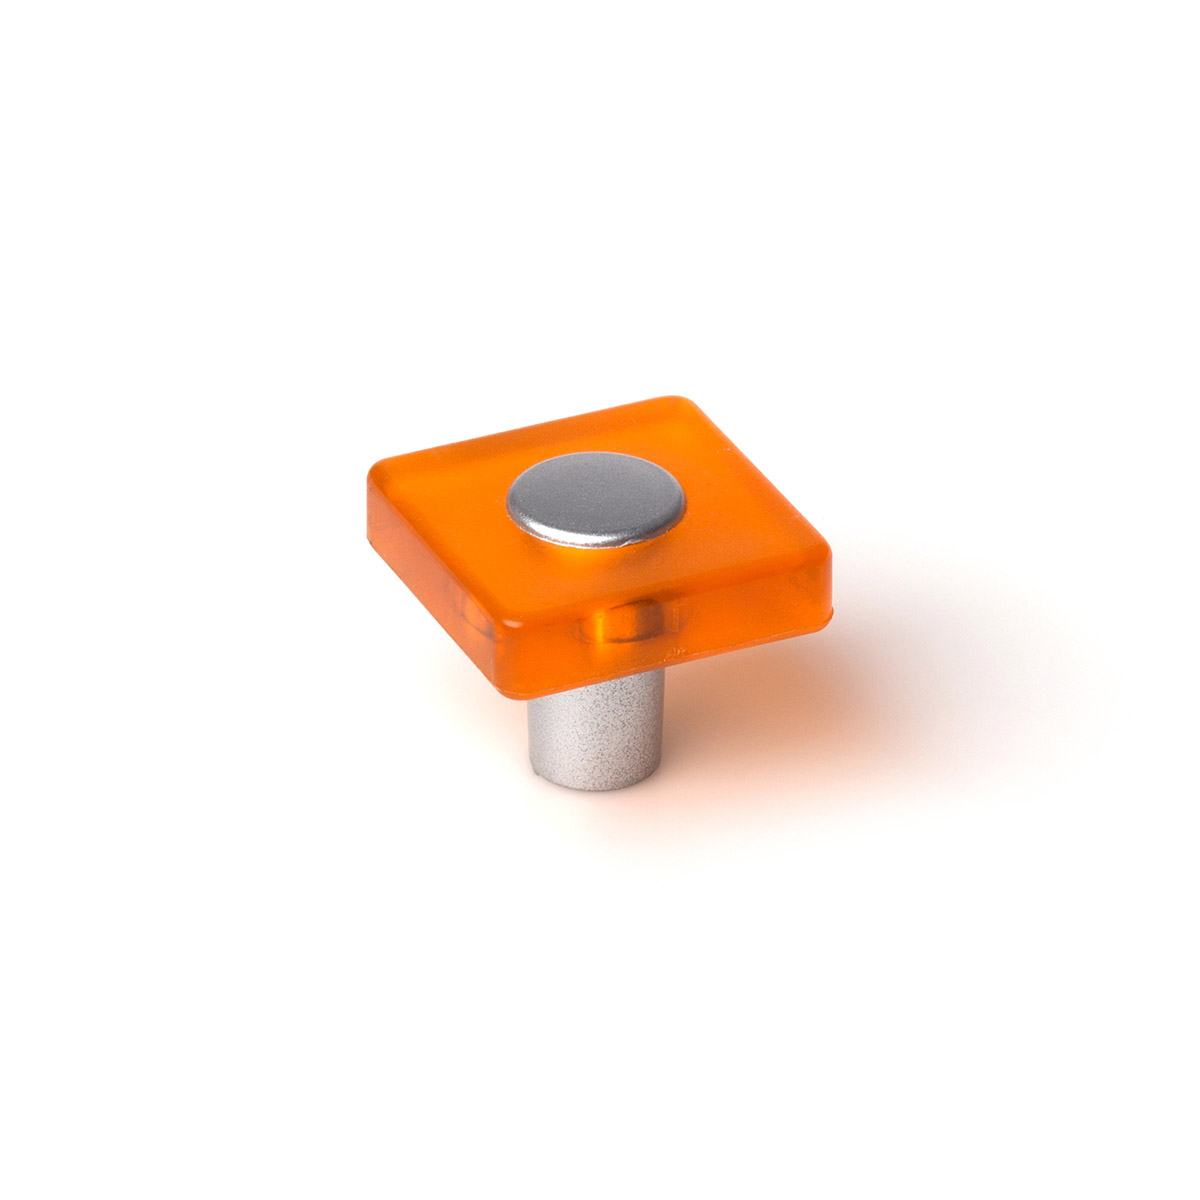 Blister con 6 pomos de plástico con acabado naranja, dimensiones: 30x30x26mm